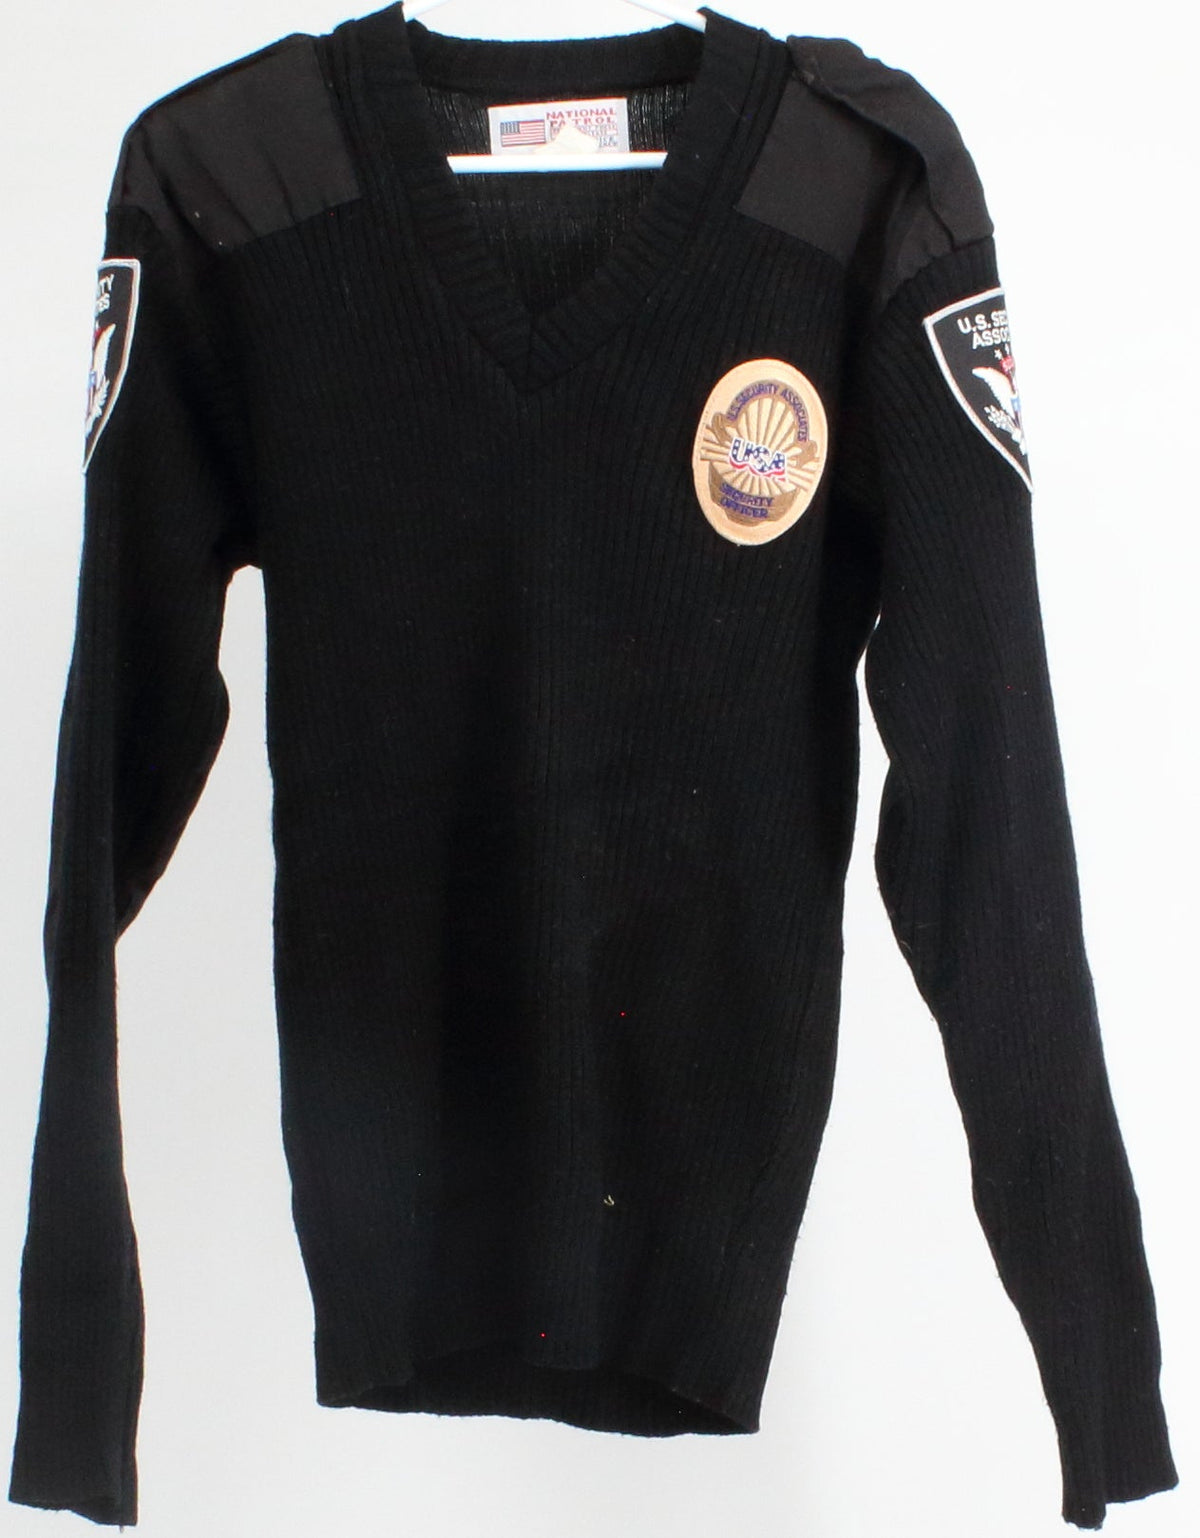 National Patrol Black Security Officer V-Neck Sweater